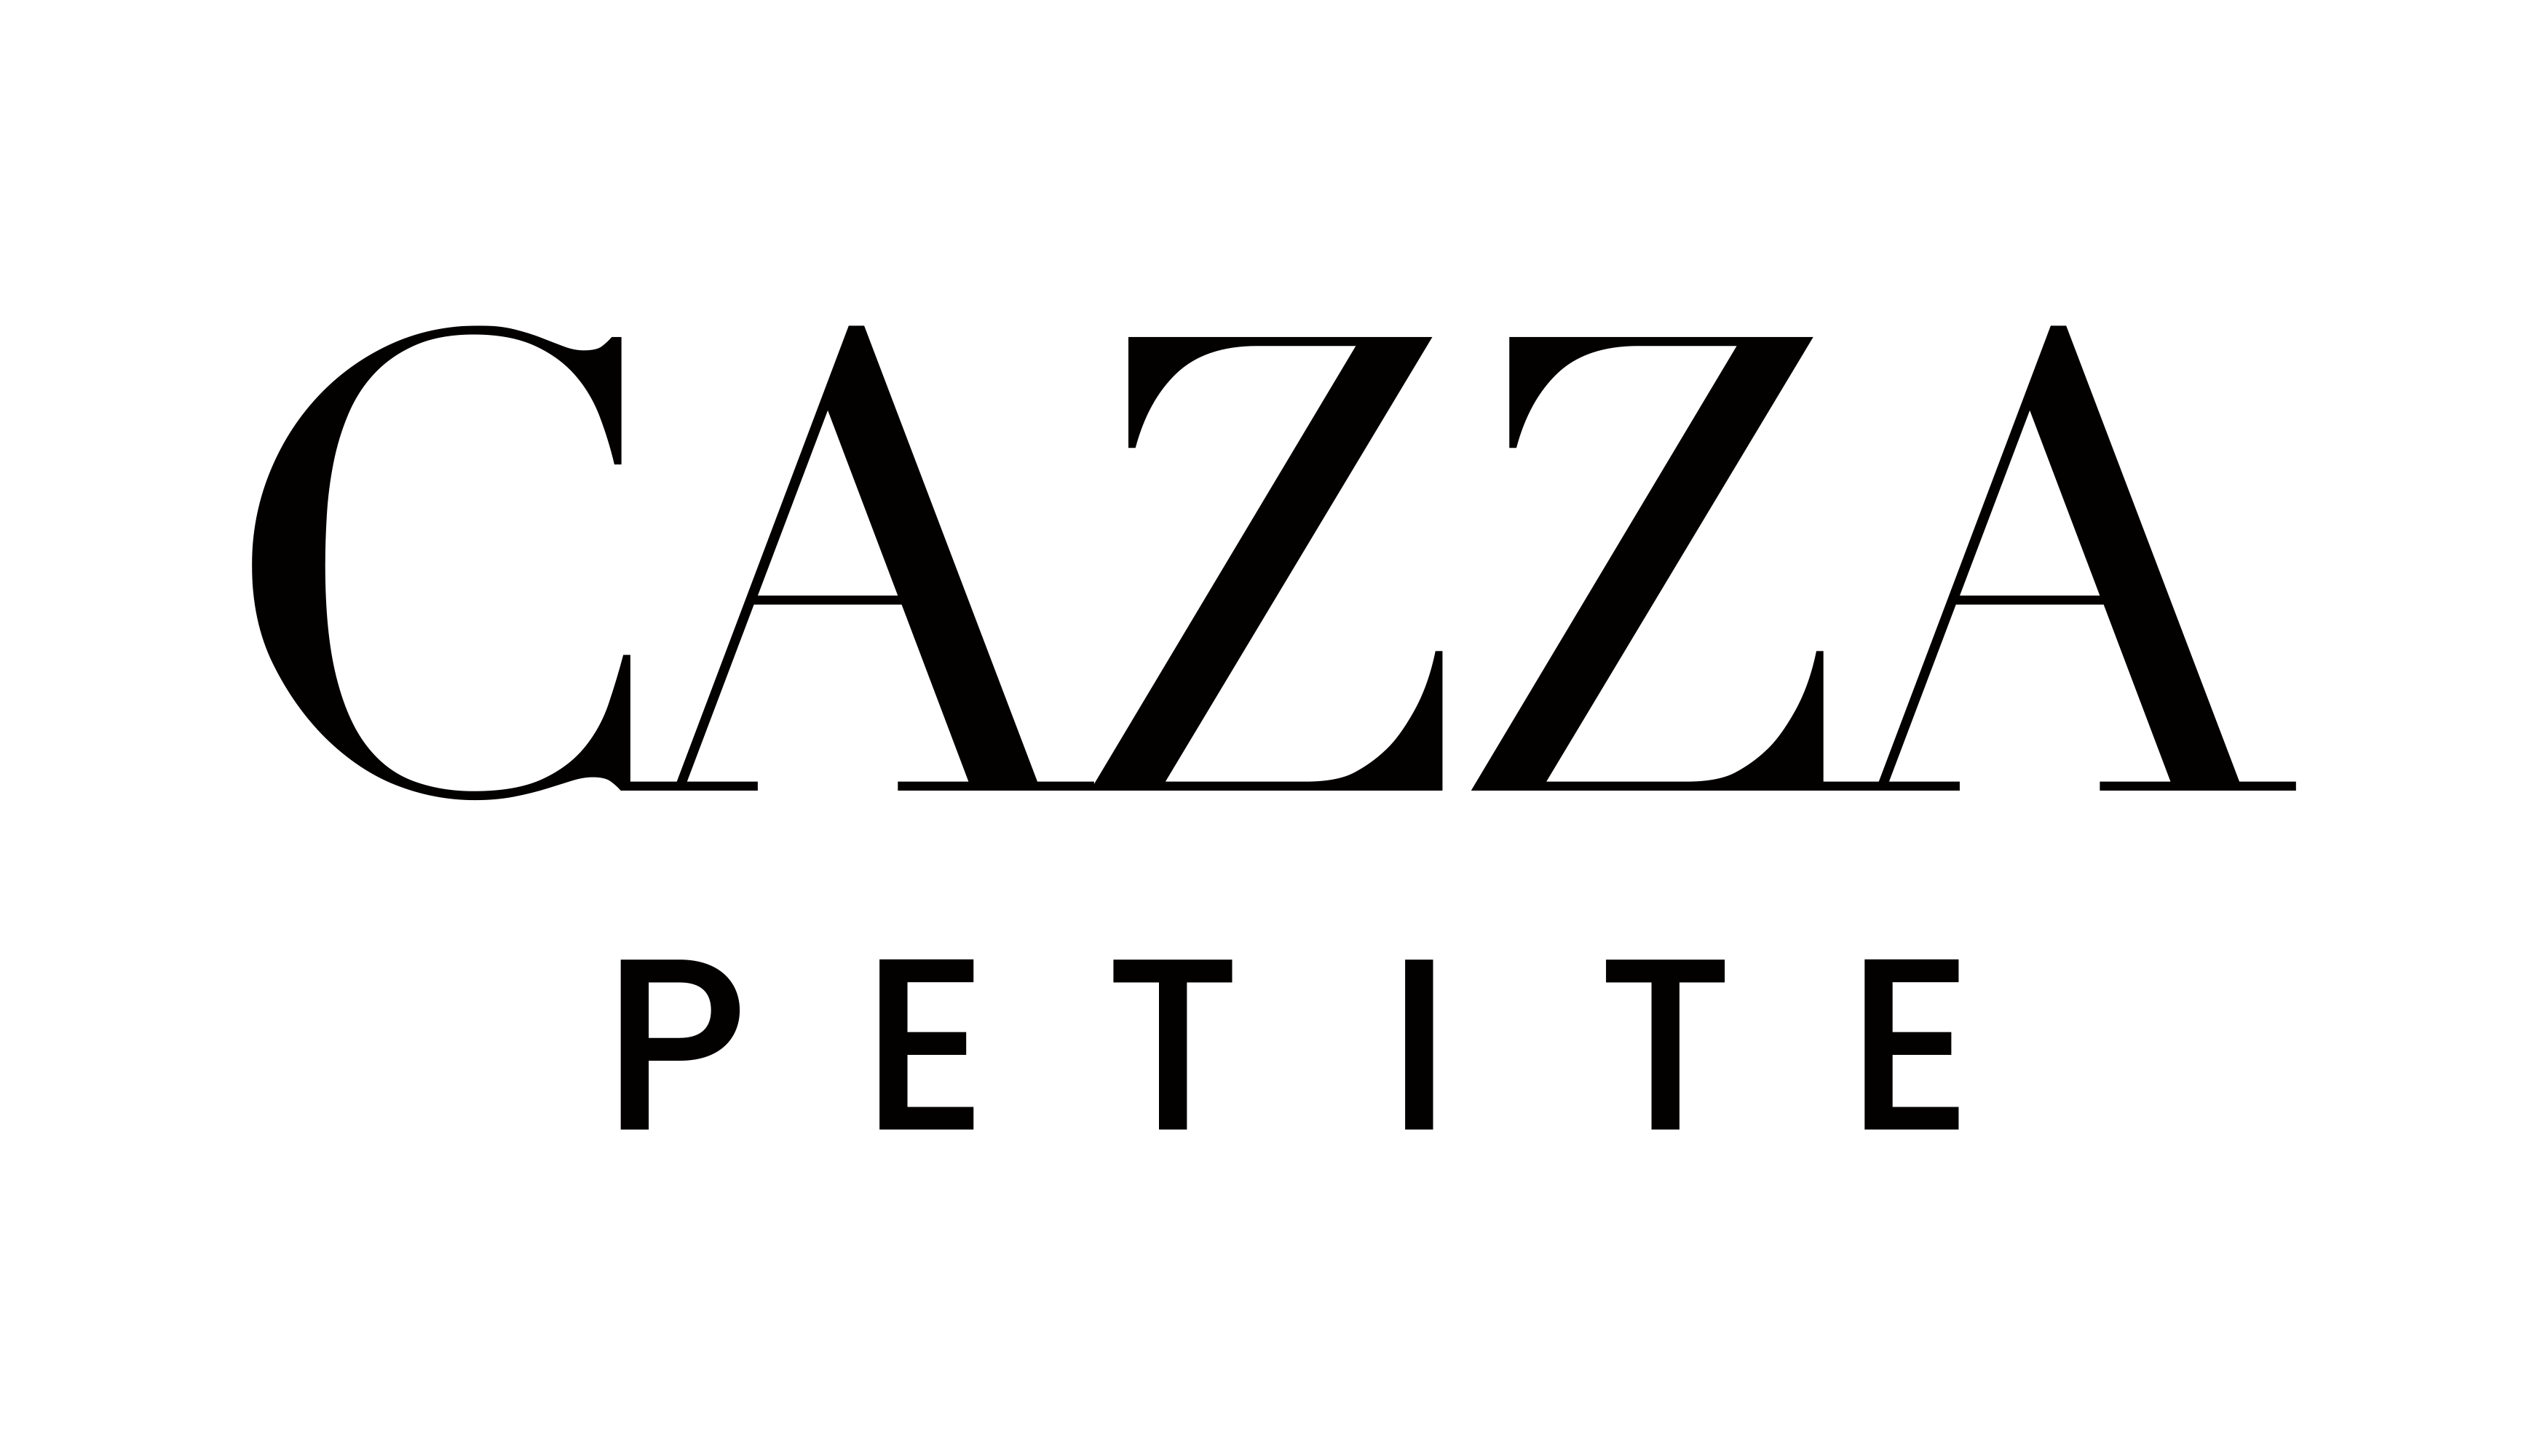 Cazza Petite logo